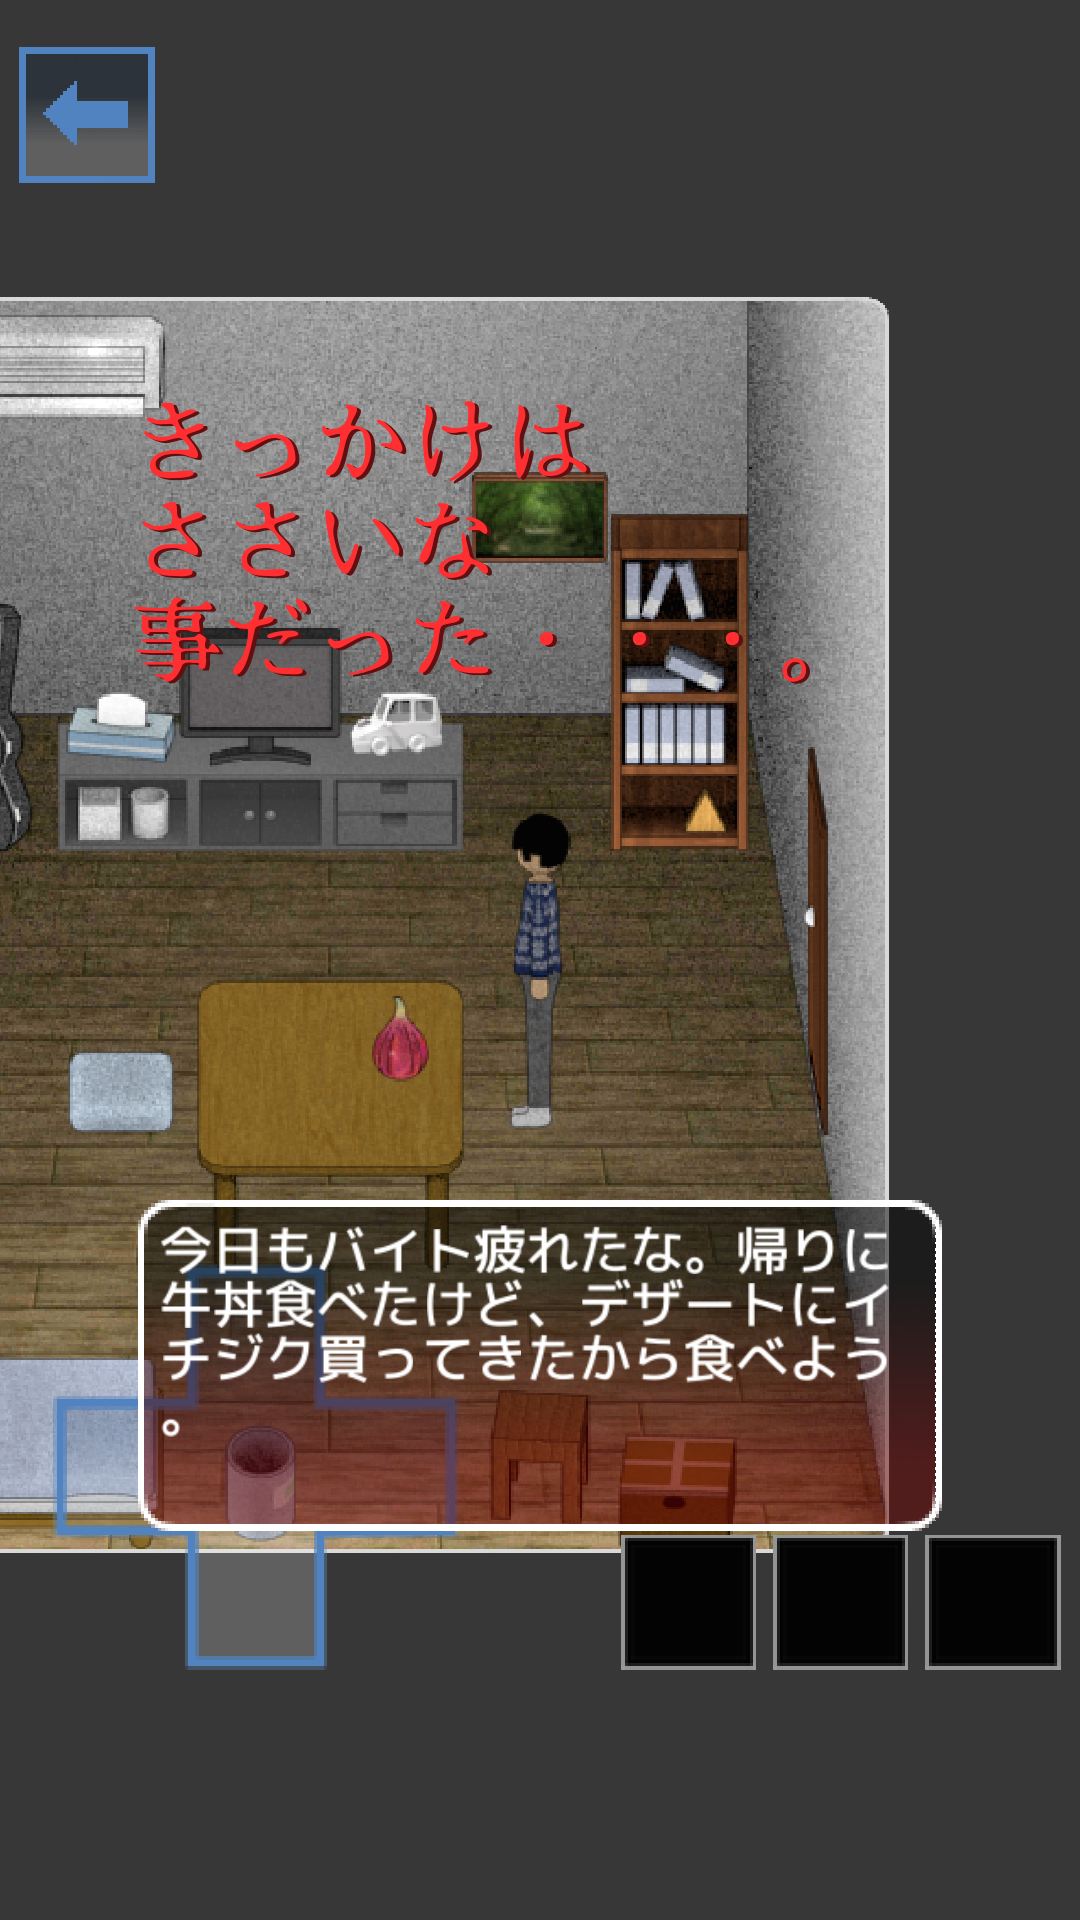 Screenshot 1 of หนีสยองขวัญ Ichijiku 1.2.2